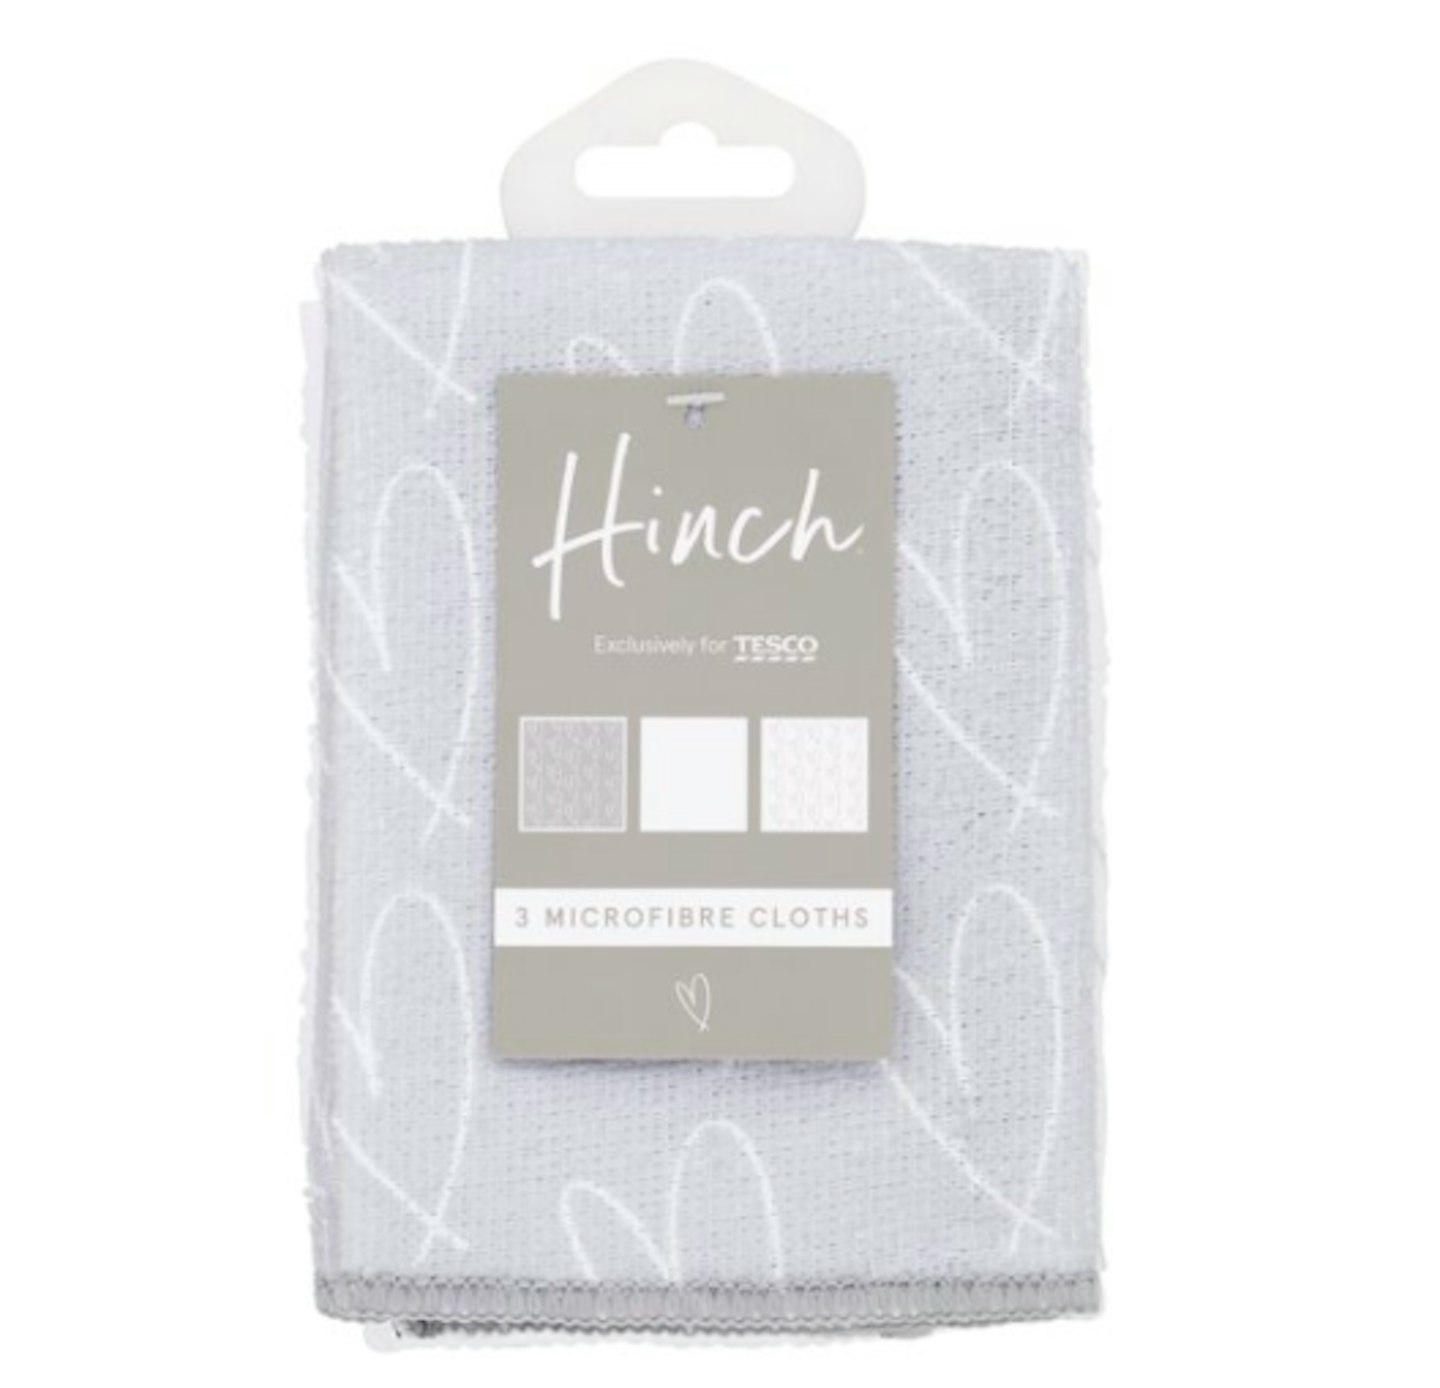 Hinch Microfibre Cloths